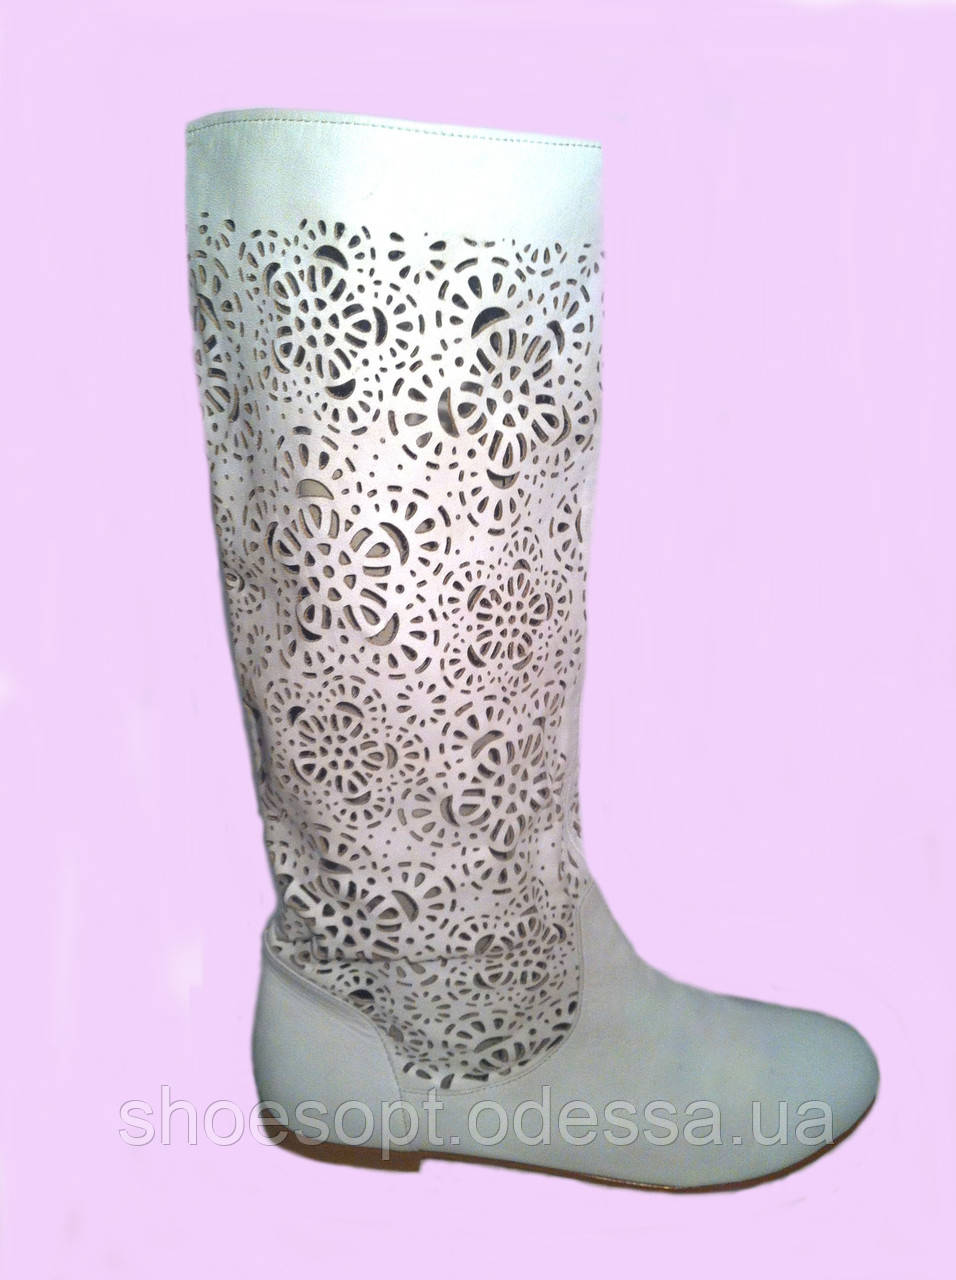 Білі жіночі шкіряні чоботи з лазерною перфорацією 39р Туреччина